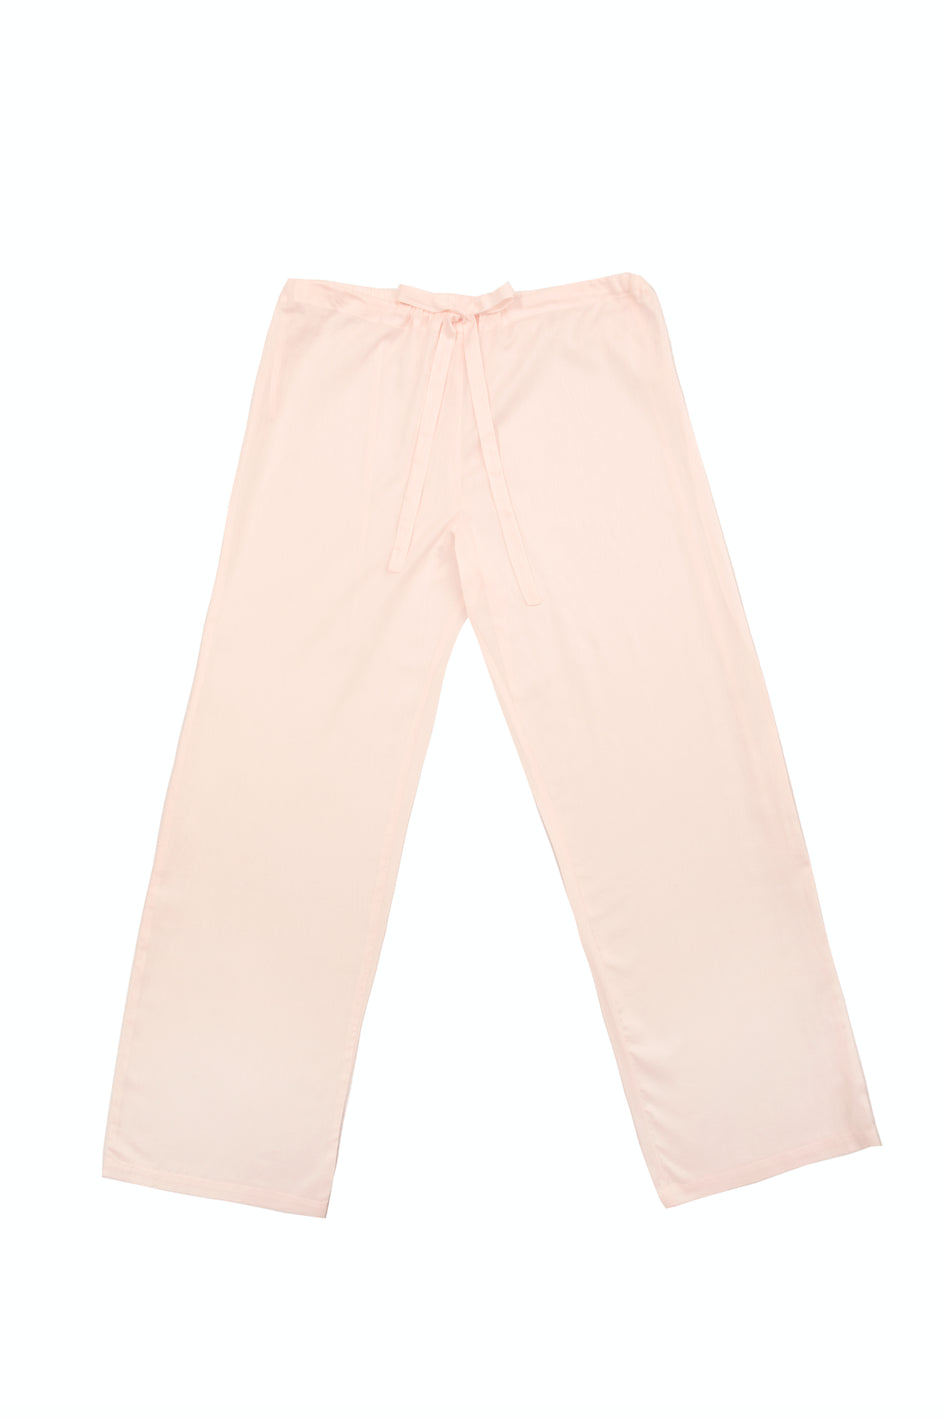 Caroline Pink Pajama